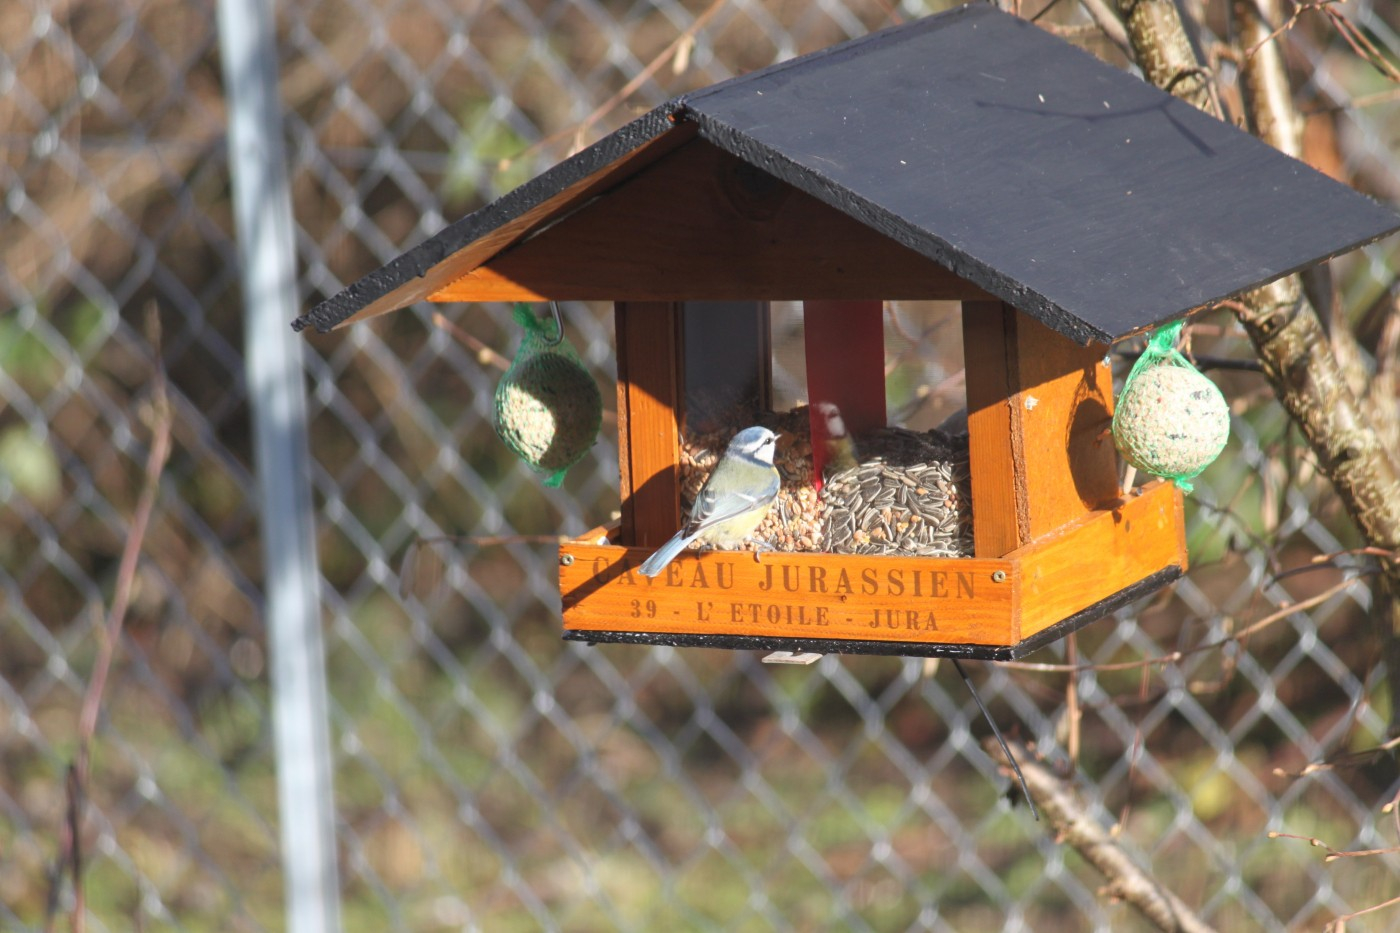 Arachide décortiquée - Alimentation pour oiseaux - Gasco